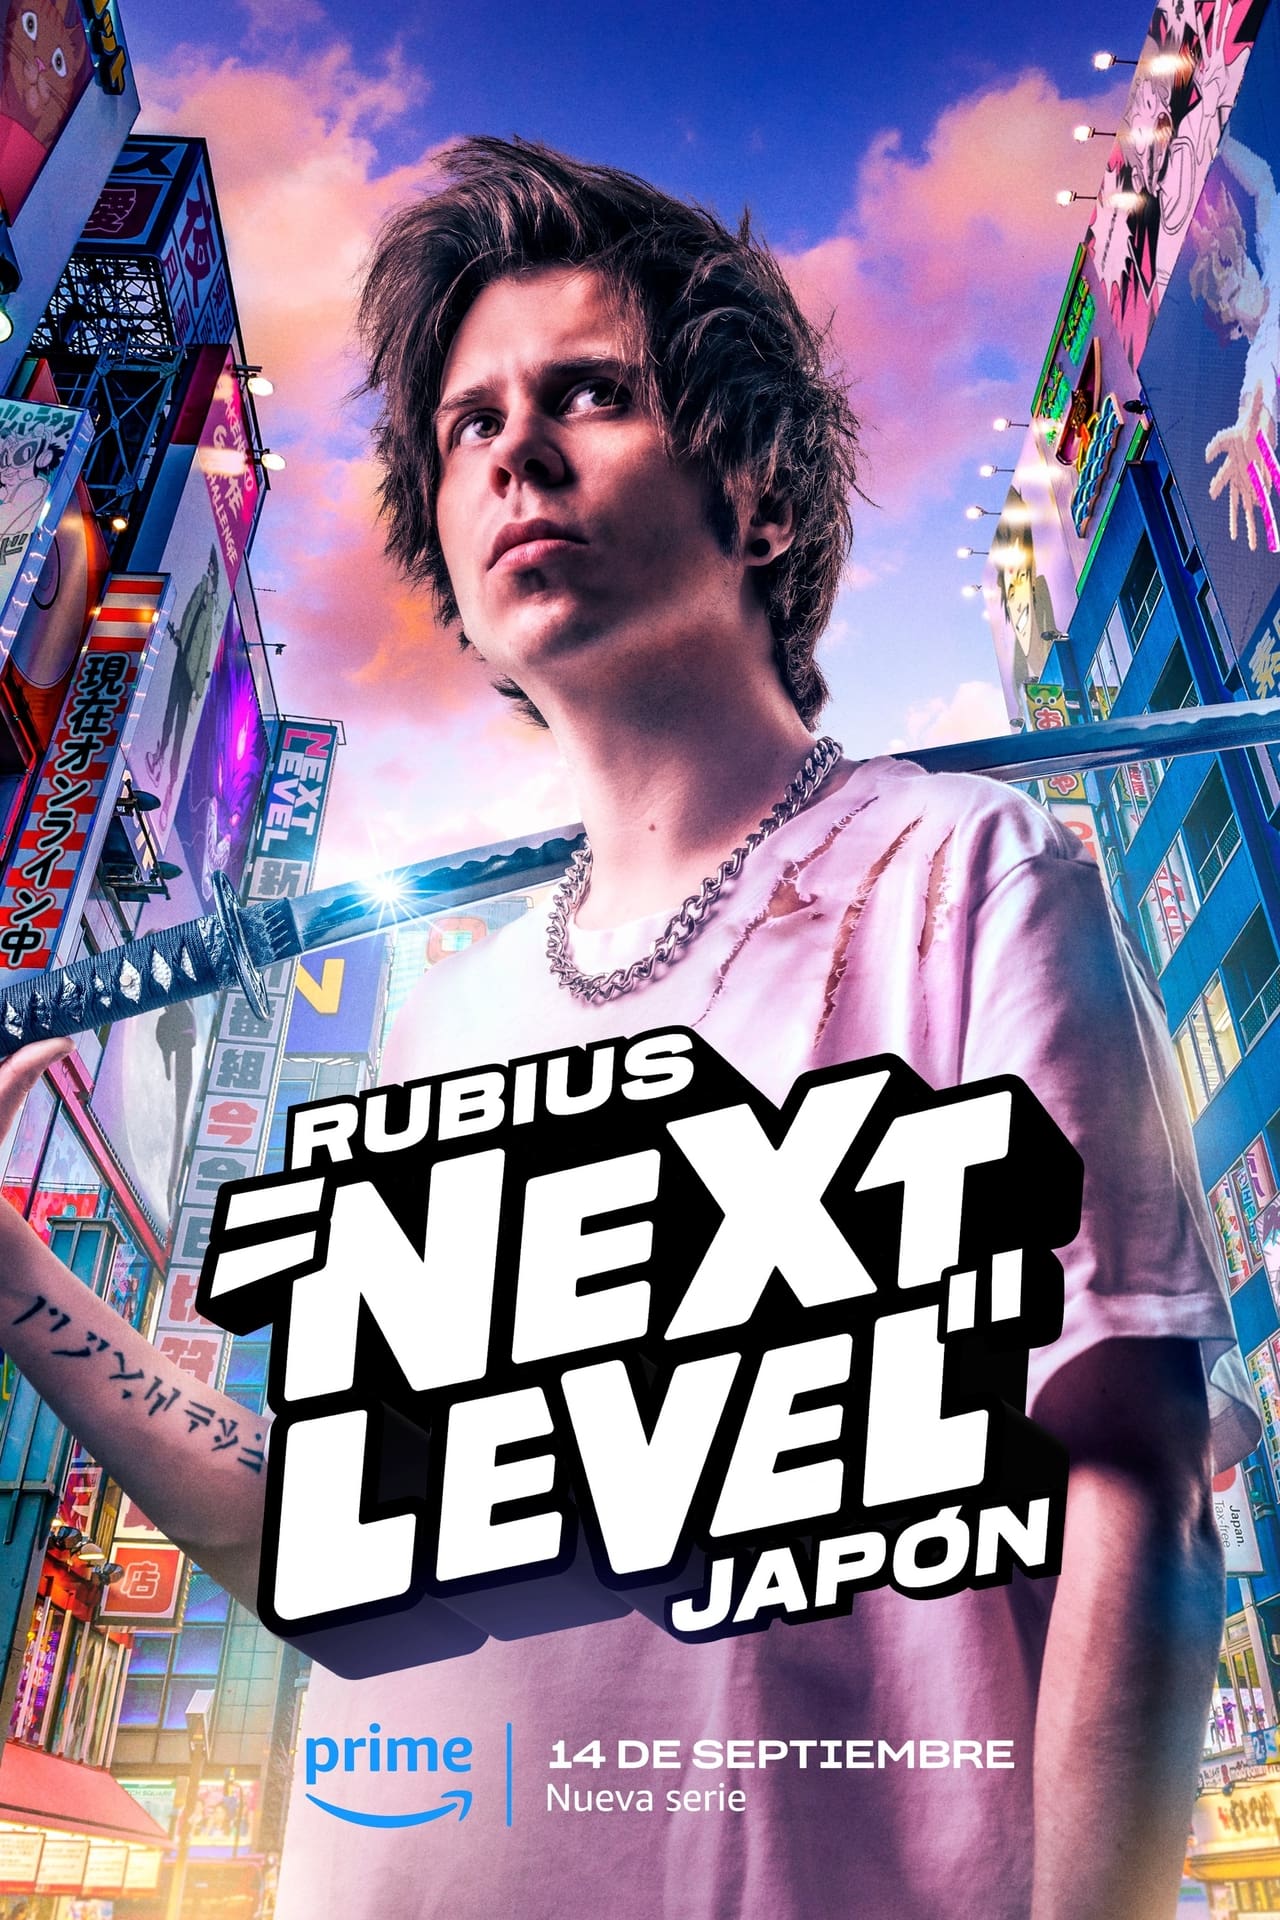 Image Rubius: Next Level Japón